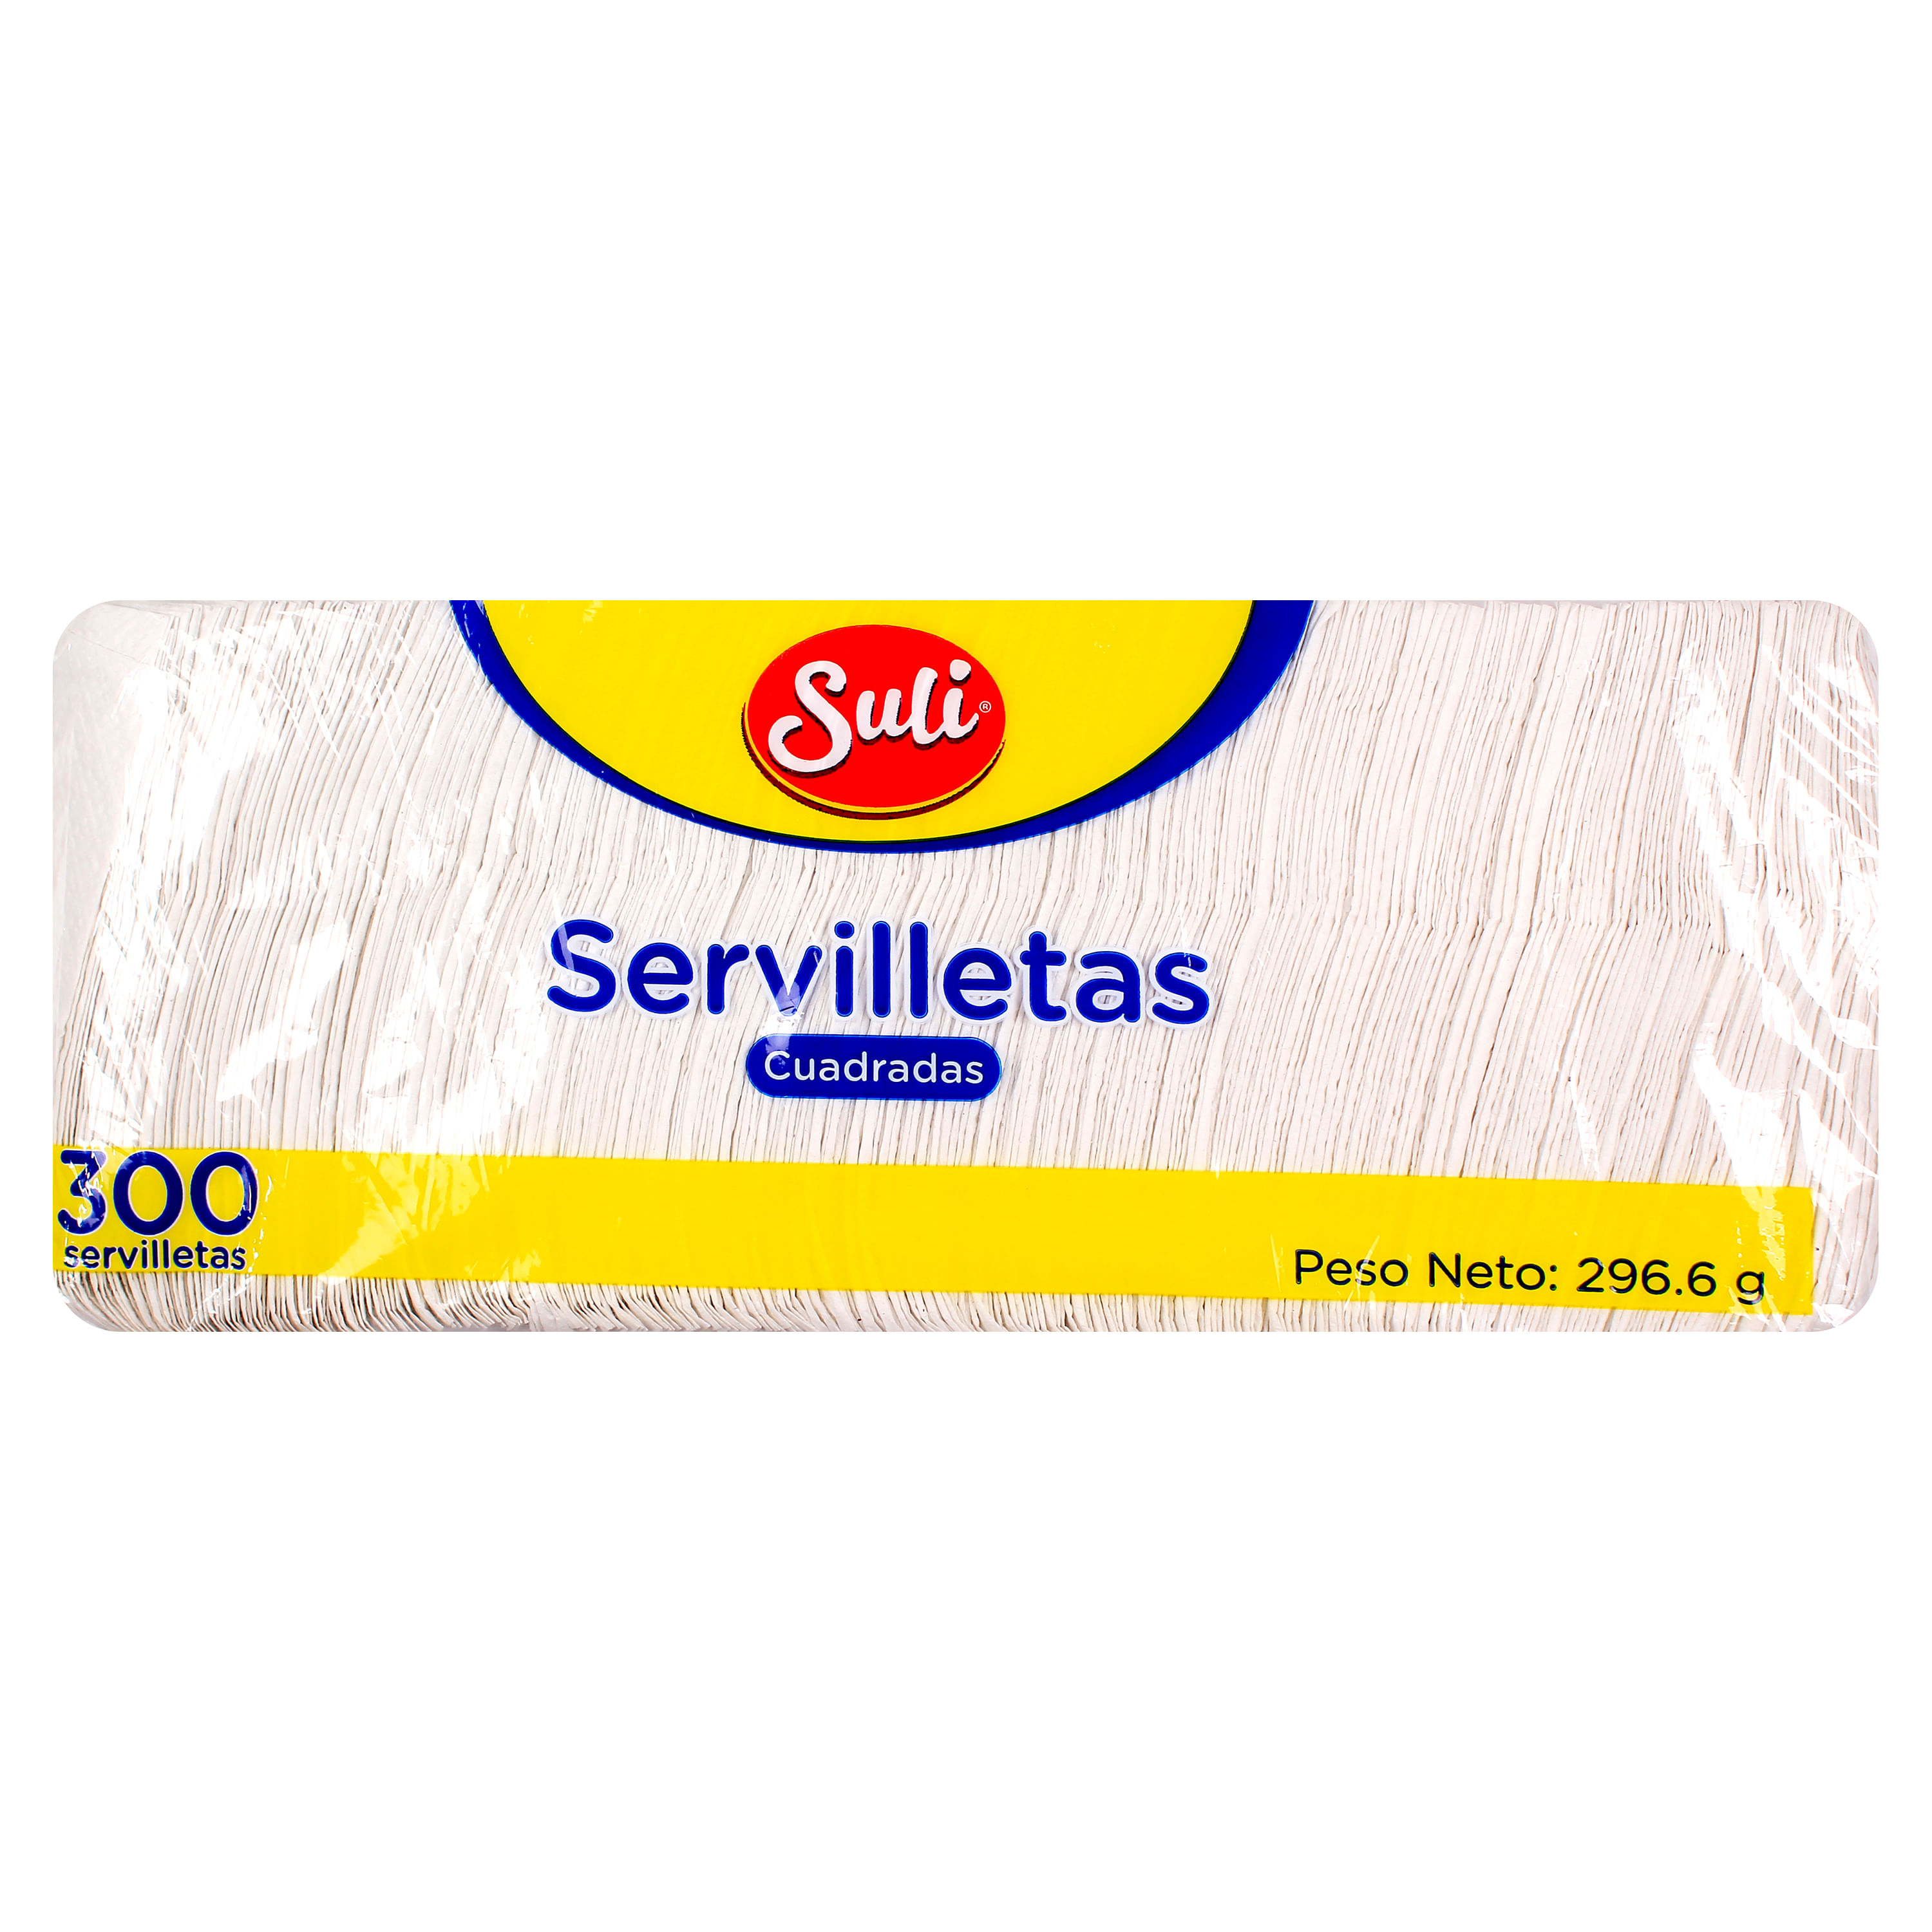 Servilleta-Suli-Cuadrada-300-unidades-1-72672